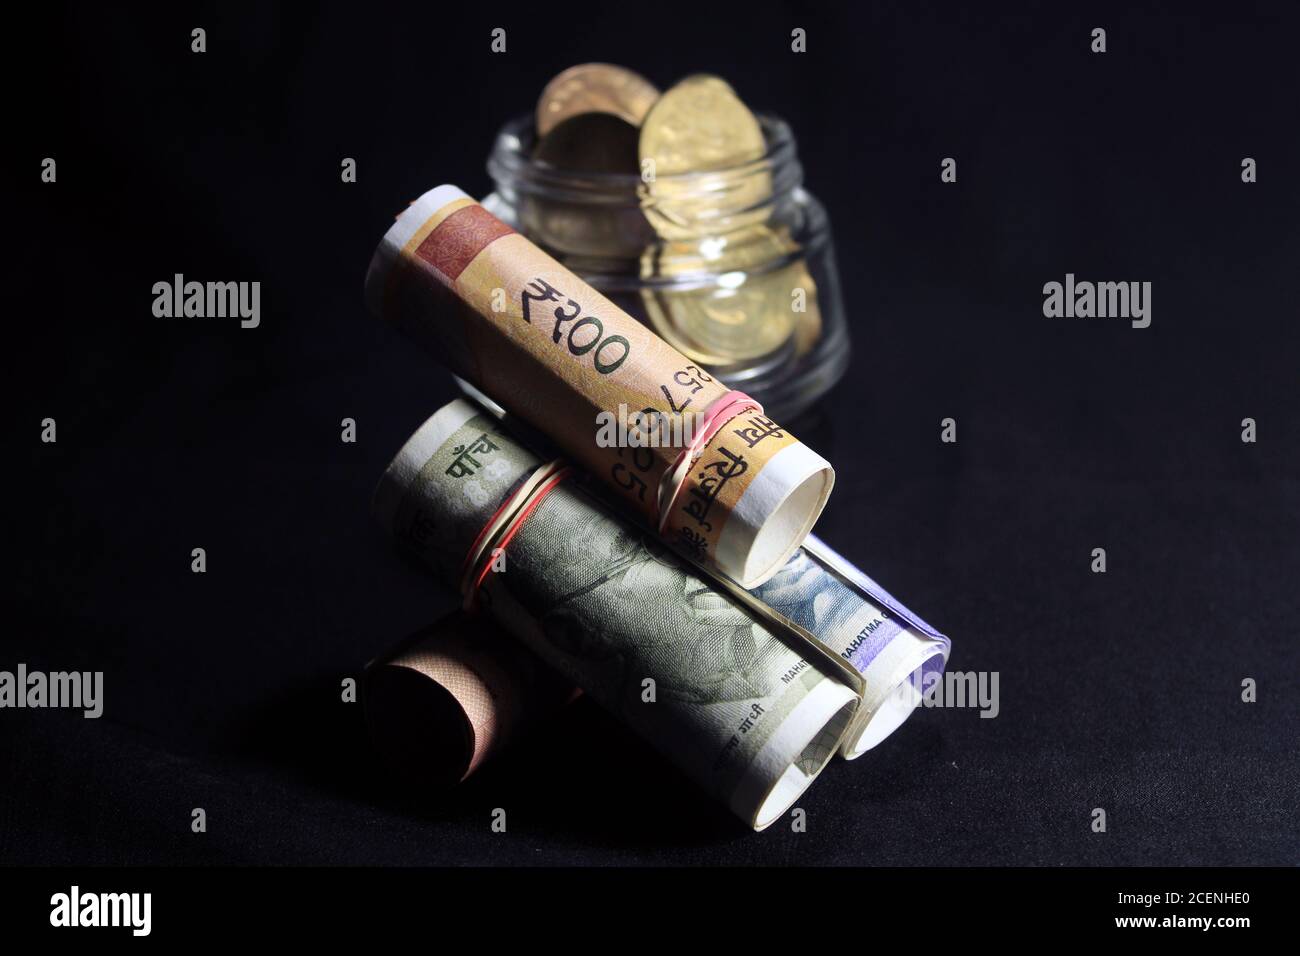 Jetzt und alte indische Währungen. 50, 100, 200, 500 Rupien-Scheine und Münzen. Indische Währung auf schwarzem Hintergrund isoliert. Stockfoto